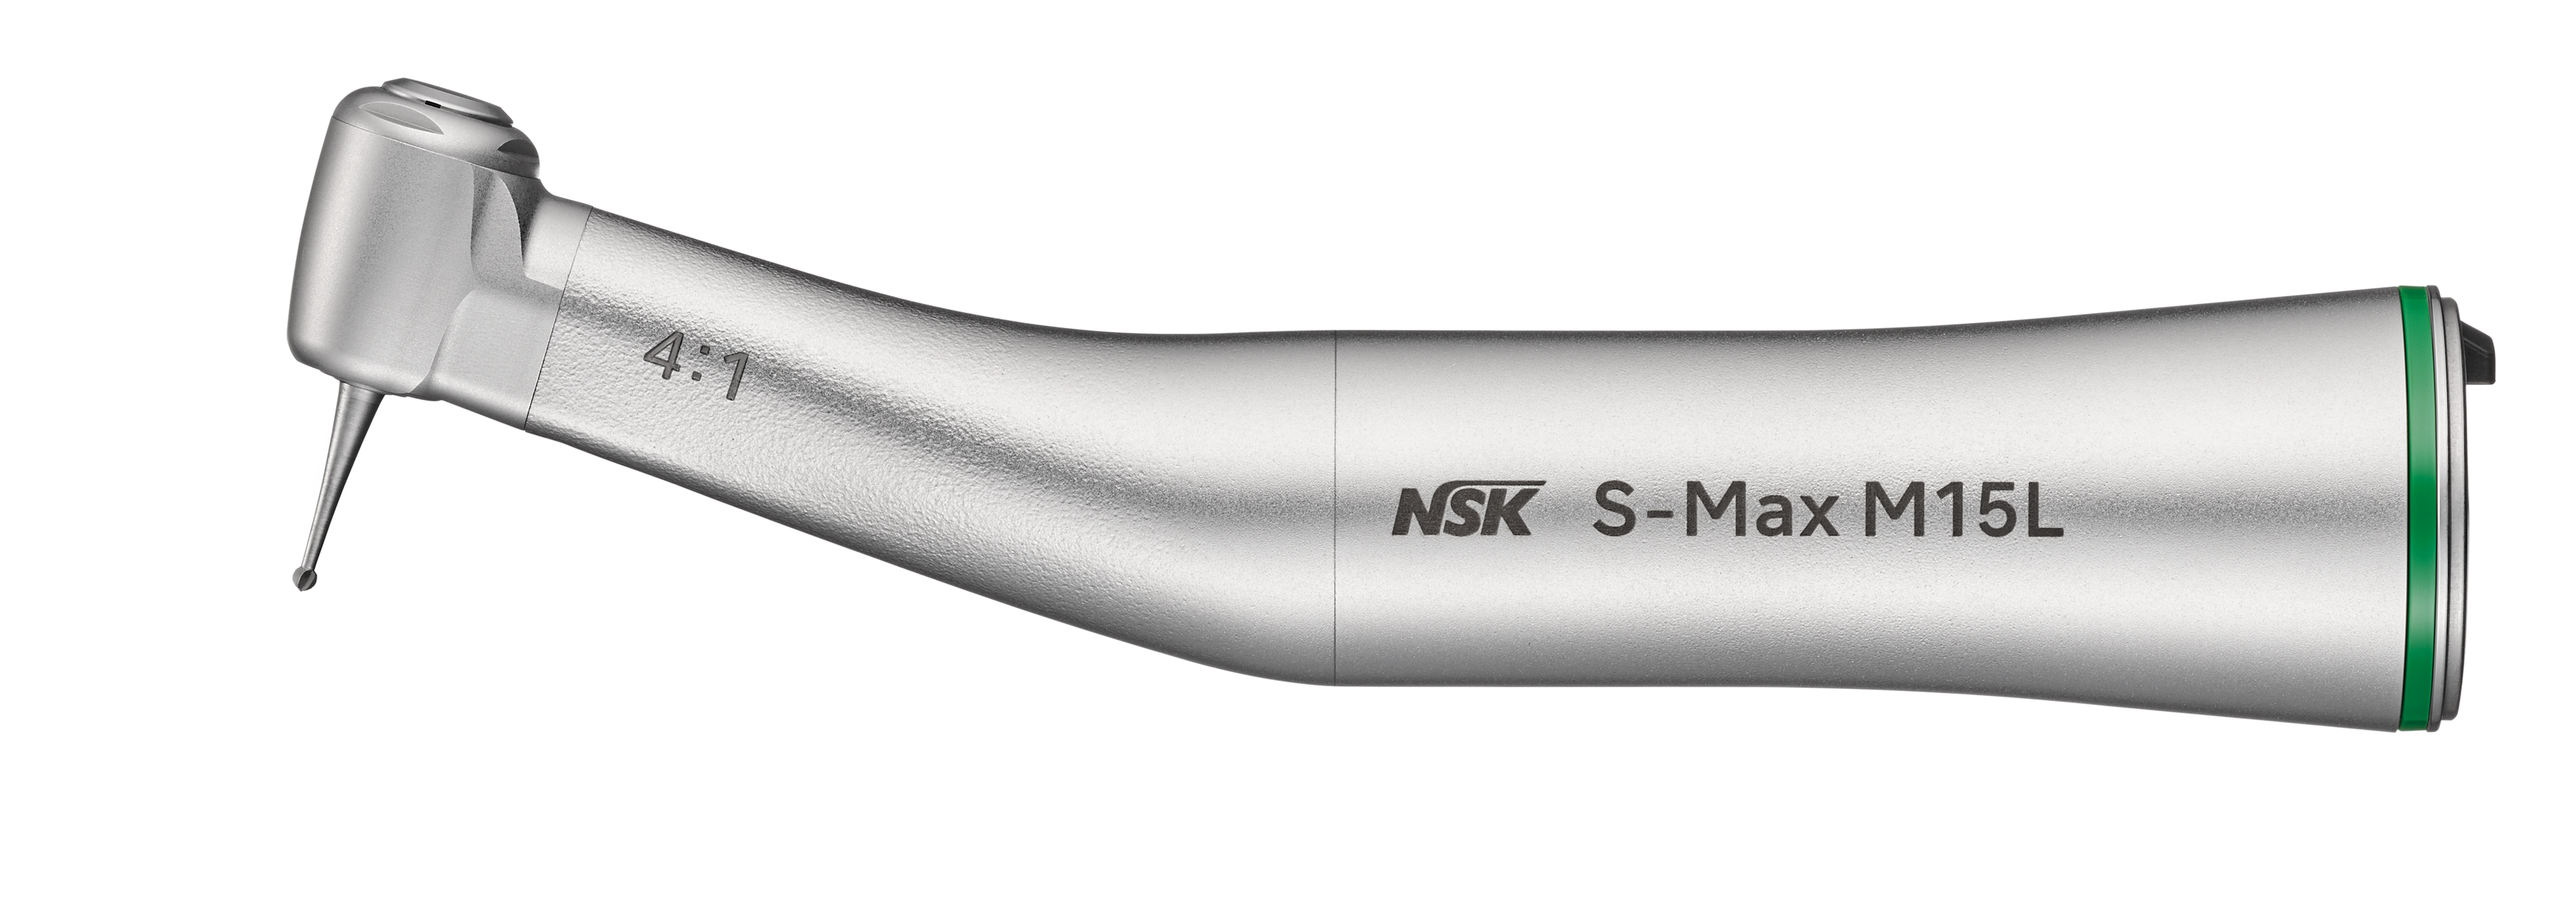 NSK S-Max M15L, Winkelstück grün 4:1 mit Licht 1-fach Spray, für Bohrer mit Winkelstückschaft 2.35mm, Edelstahlkörper